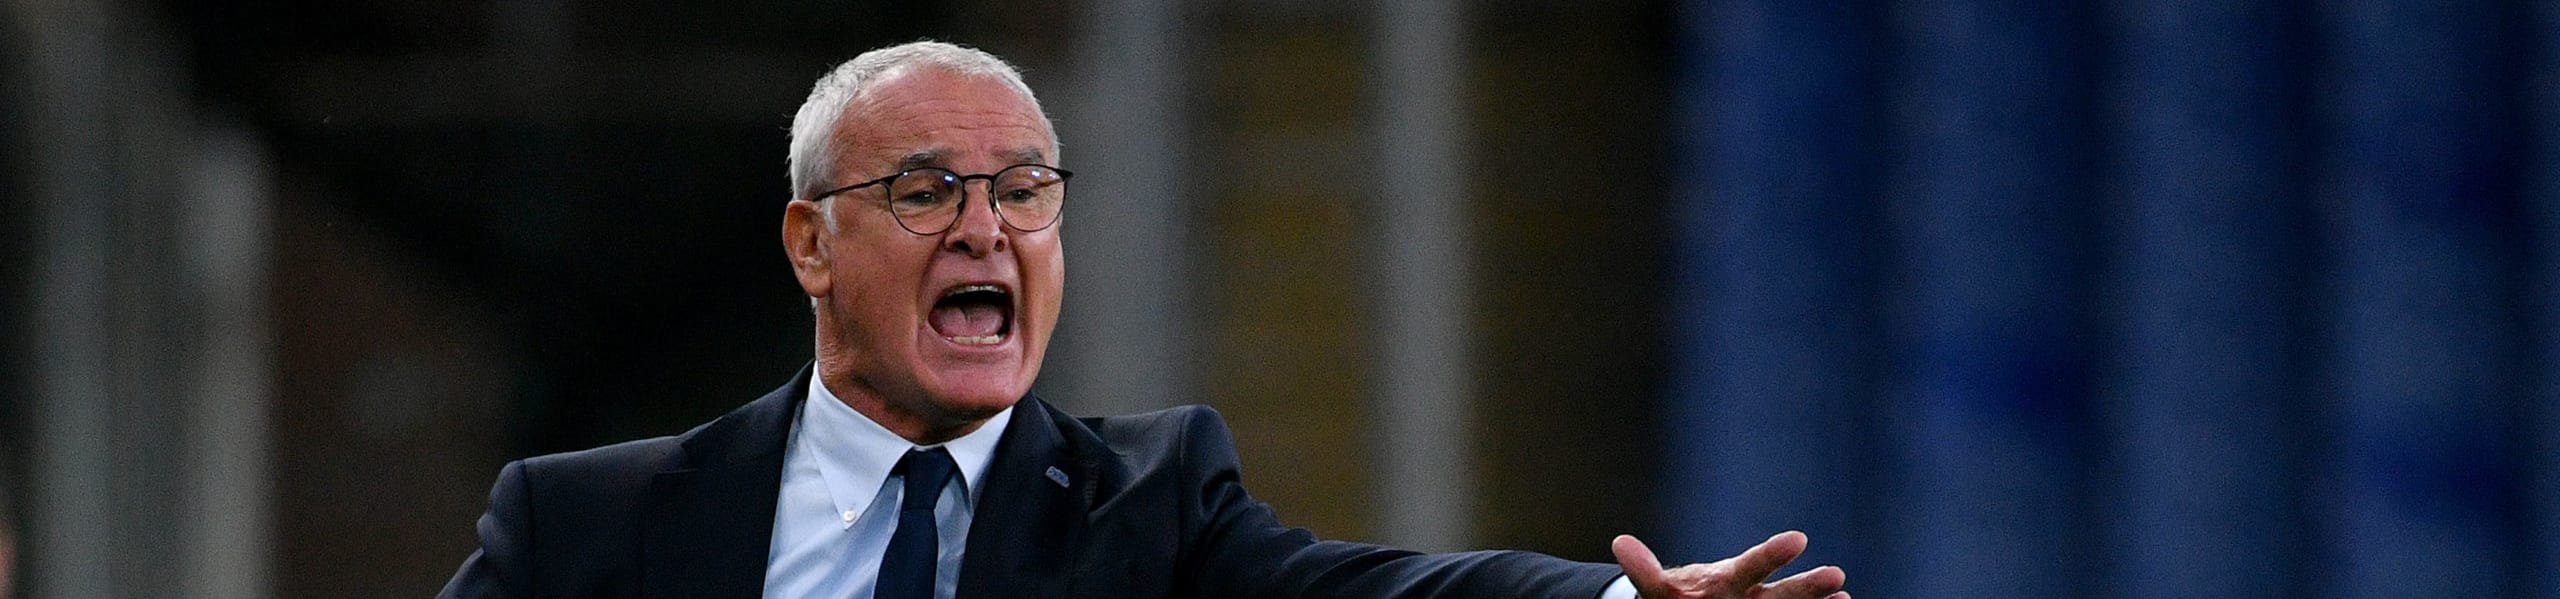 Pronostico Sampdoria-Genoa: Ranieri aspetta Candreva, Maran valuta il 4-3-1-2 - le ultimissime